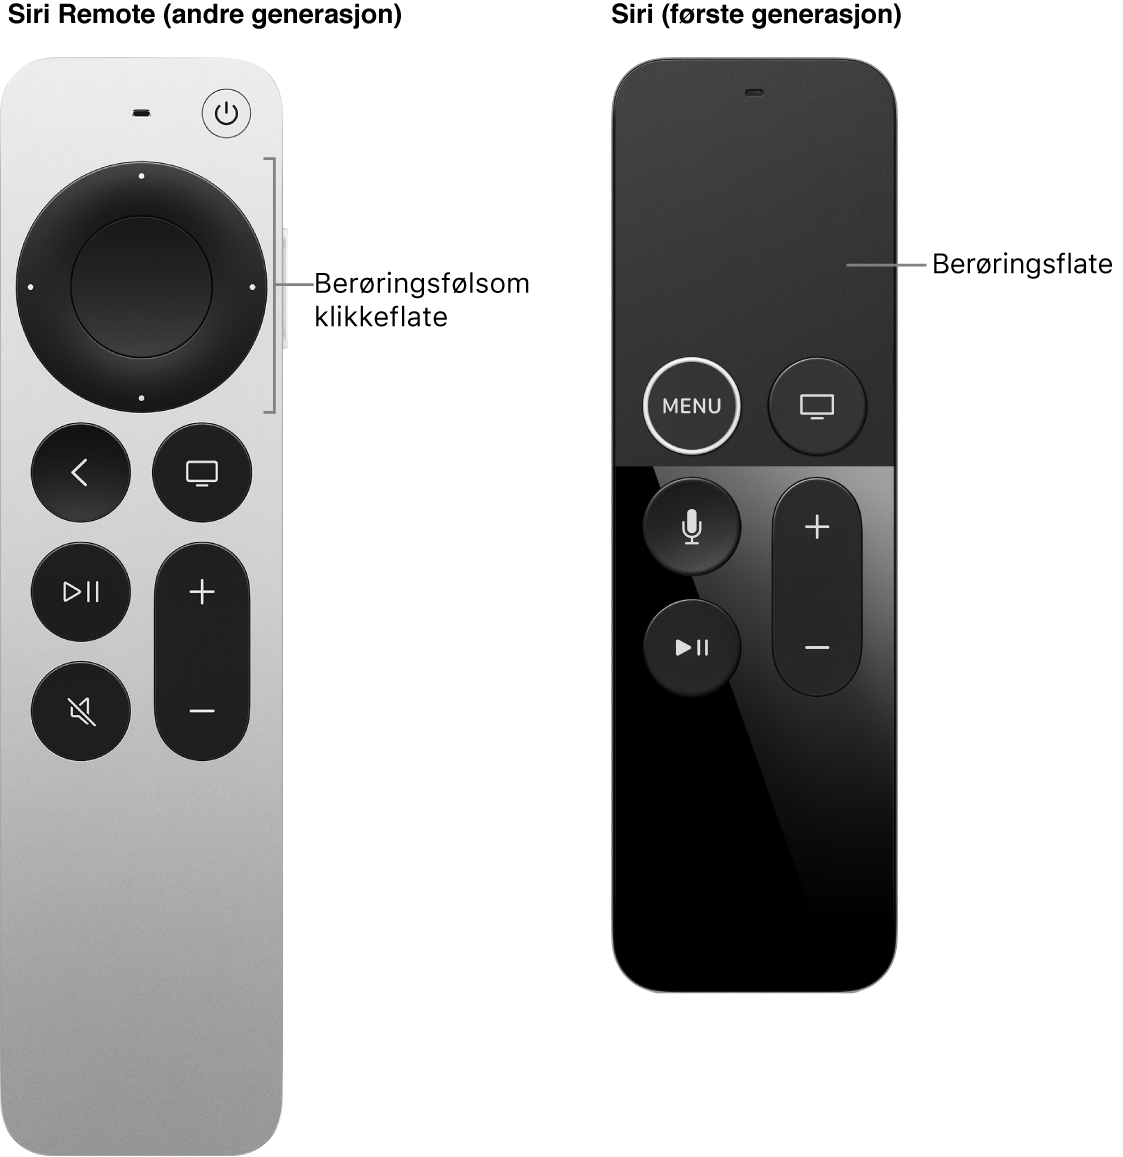 Siri Remote (andre generasjon) med trykkflate og Siri Remote (første generasjon) med berøringsflate